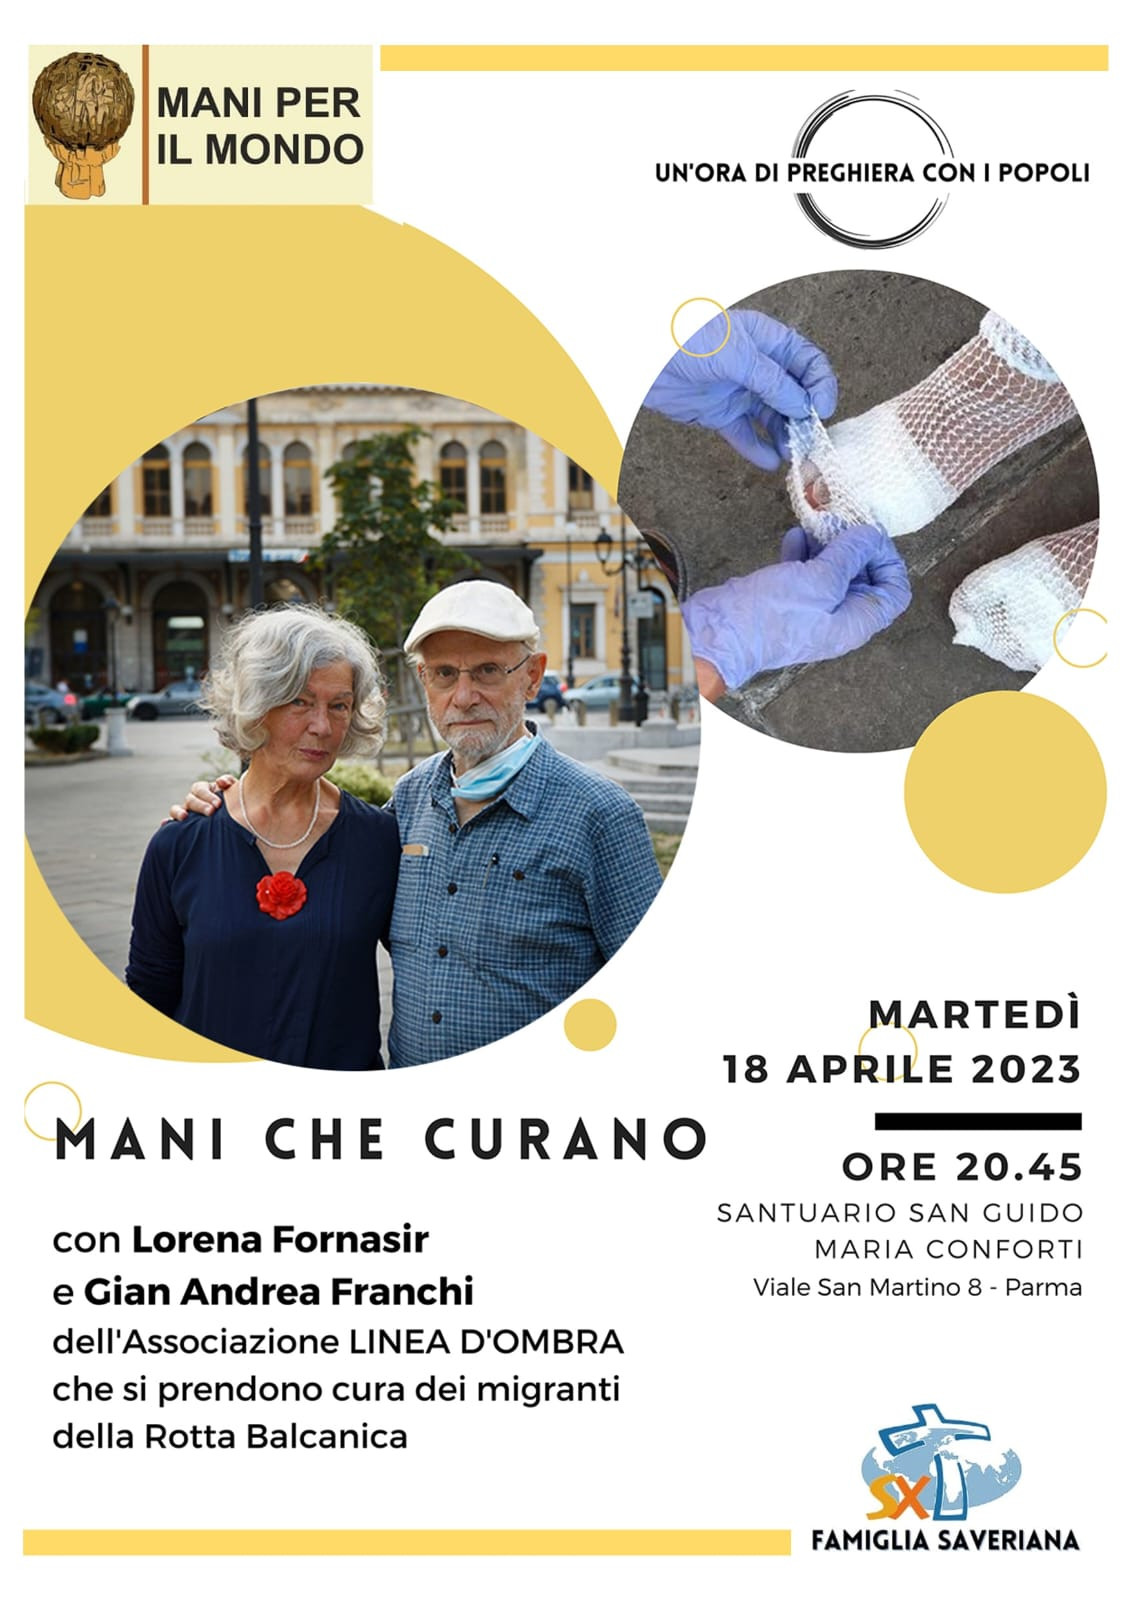 MANI CHE CURANO - Incontro con Lorena Fornasir e Gian Andrea Franchi